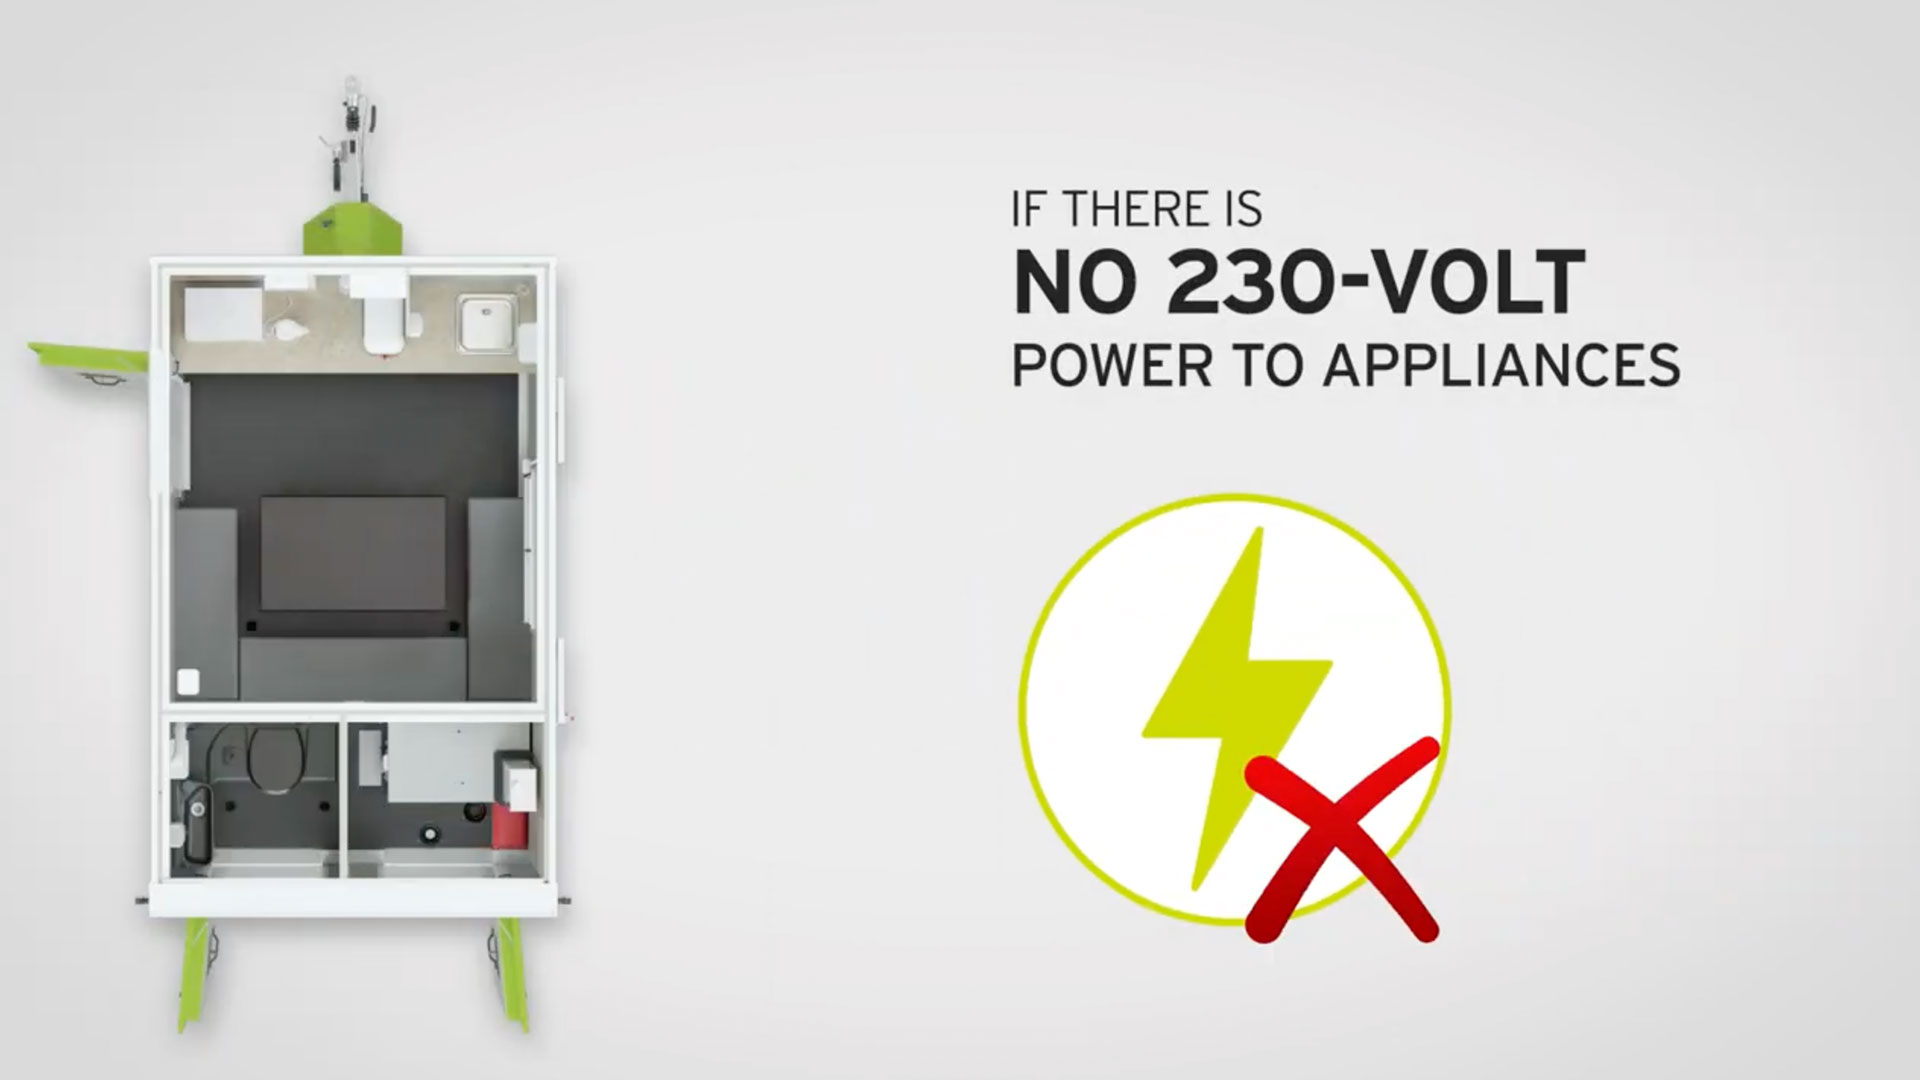 No 230-Volt power to appliances